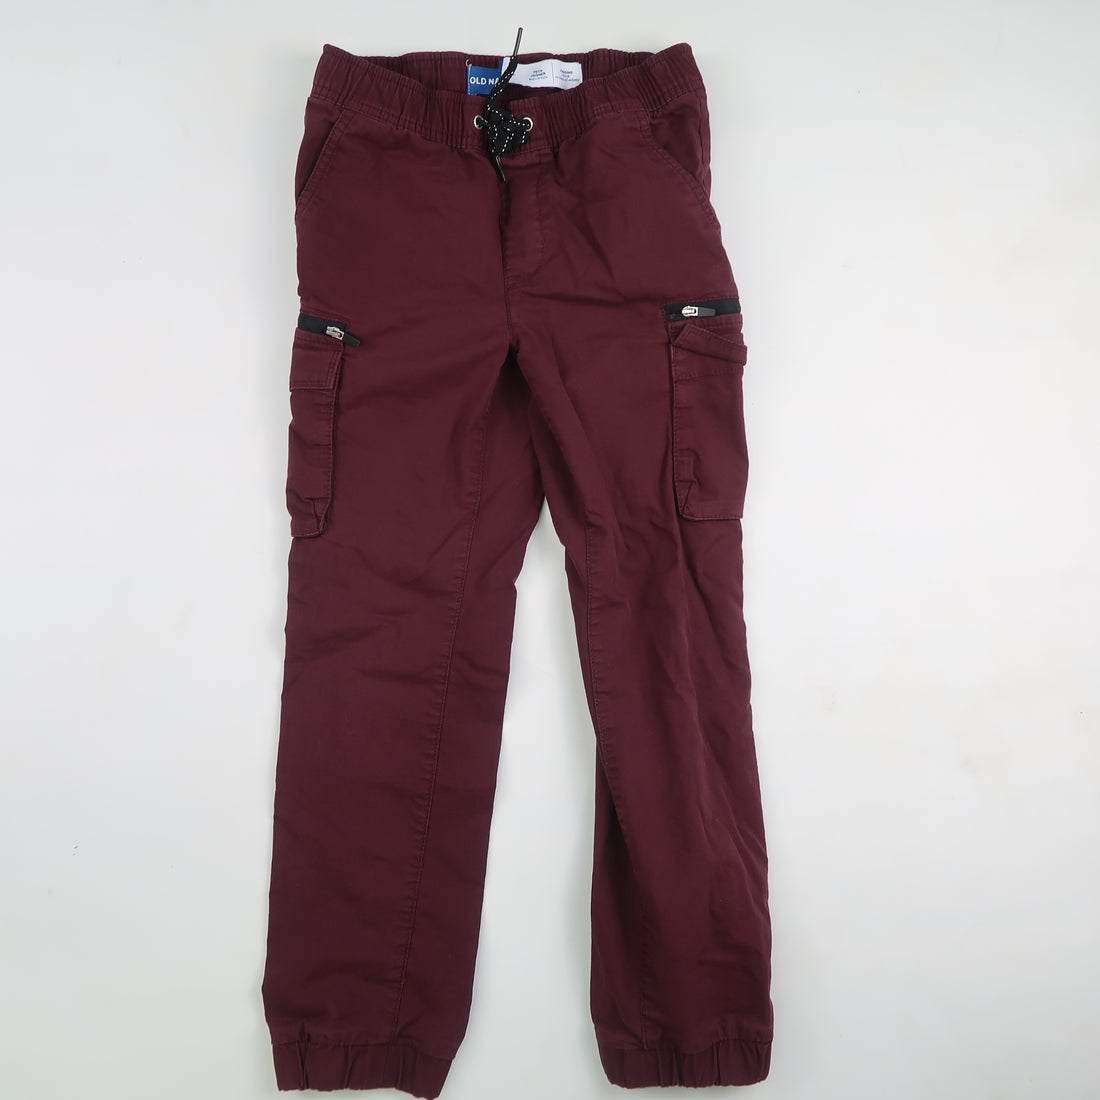 Old Navy - Pants (8Y)